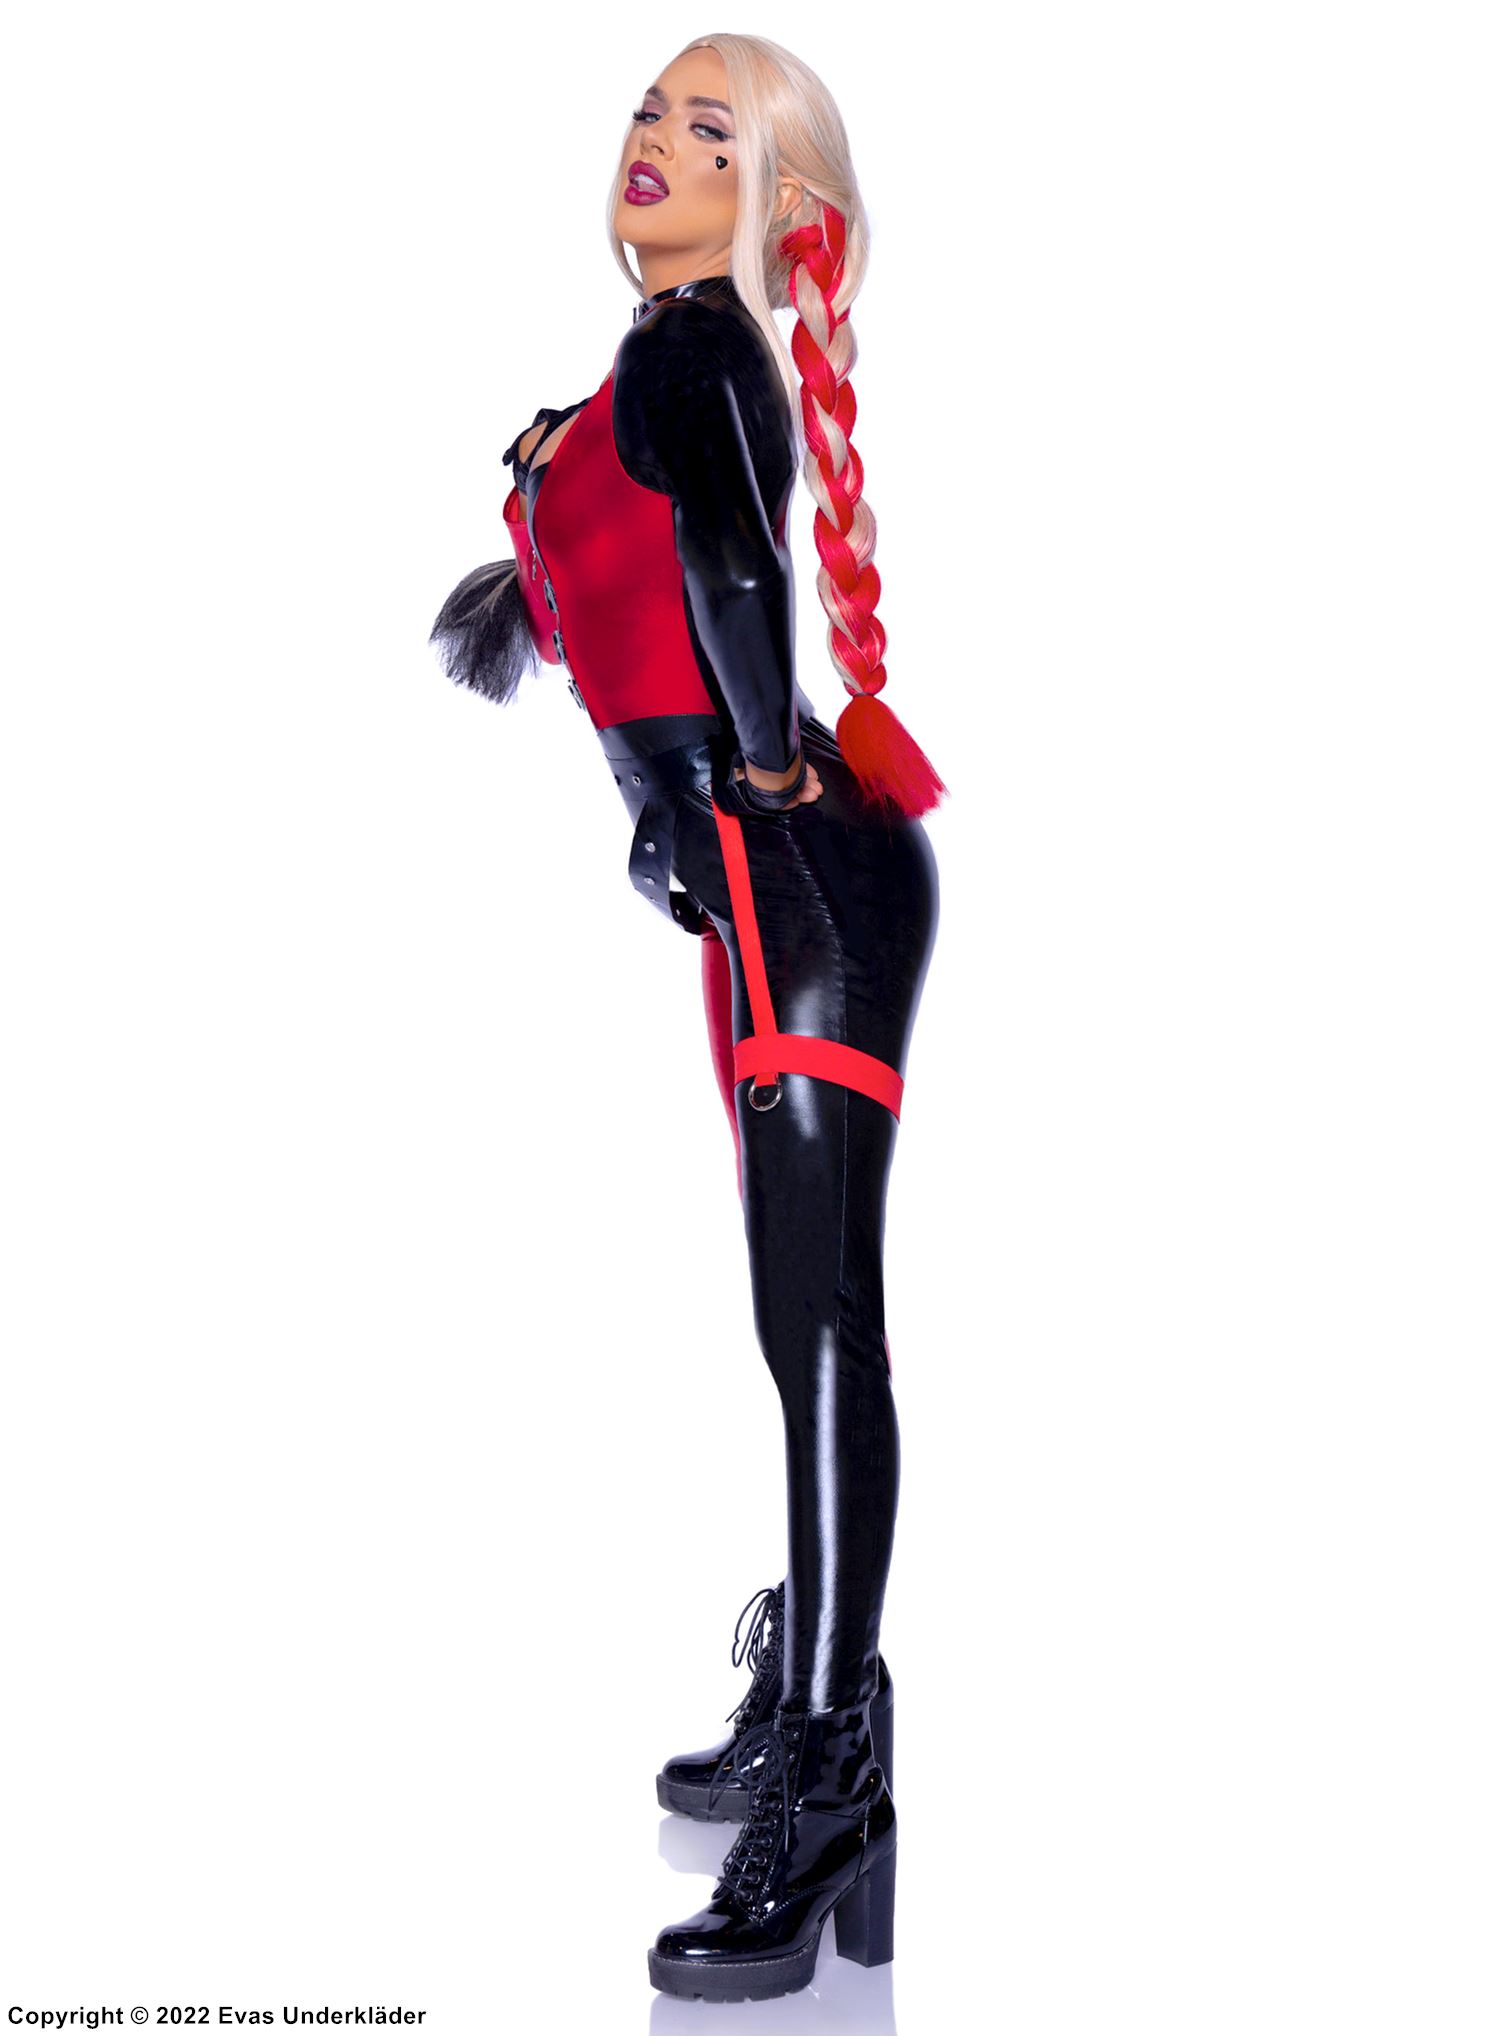 Female joker, costume catsuit, long sleeves, front zipper, built-in garter belt strap, buckles